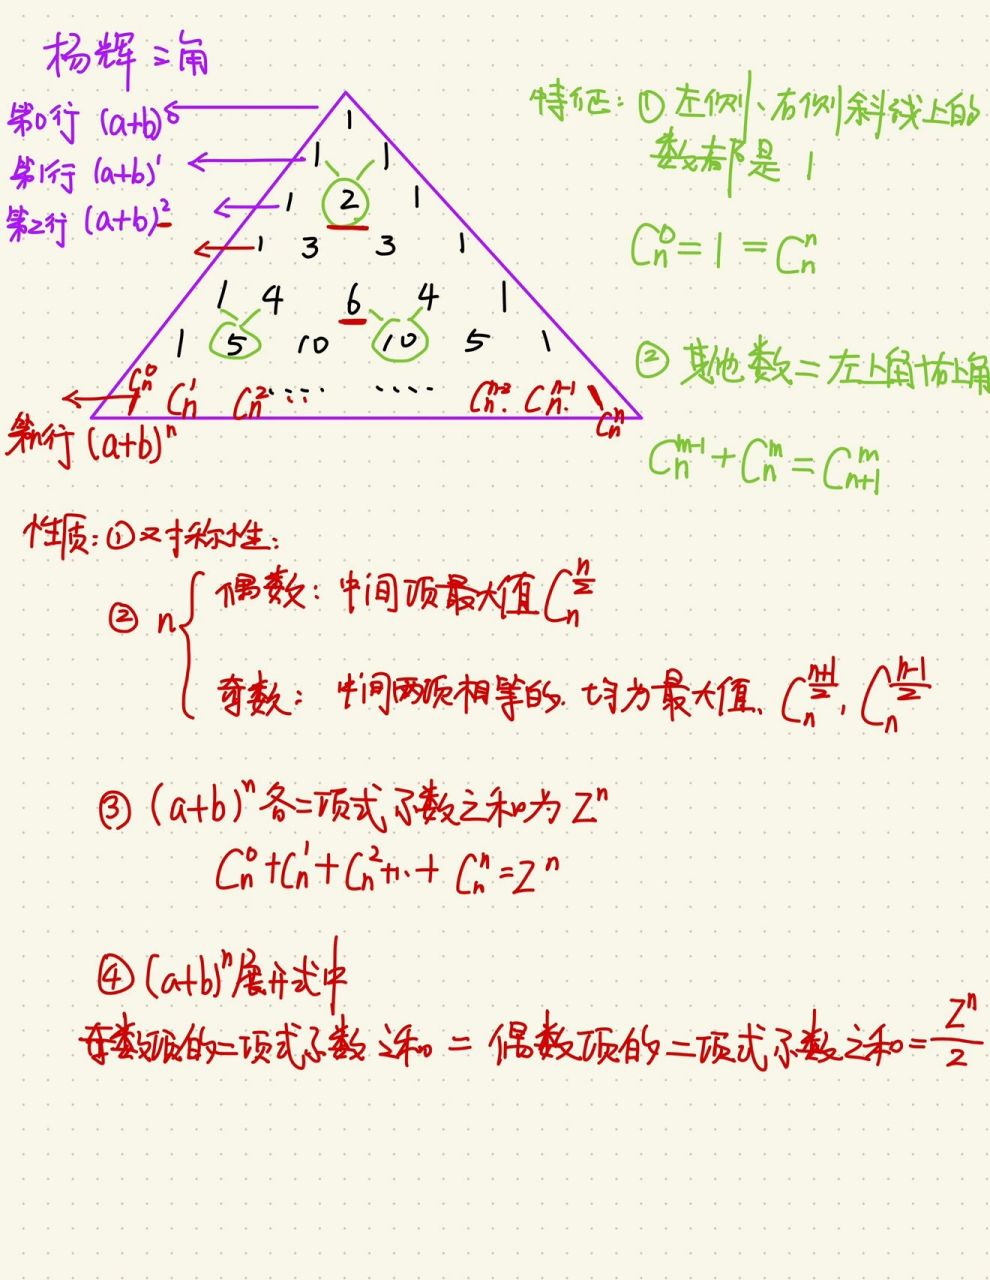 杨辉三角图示图片